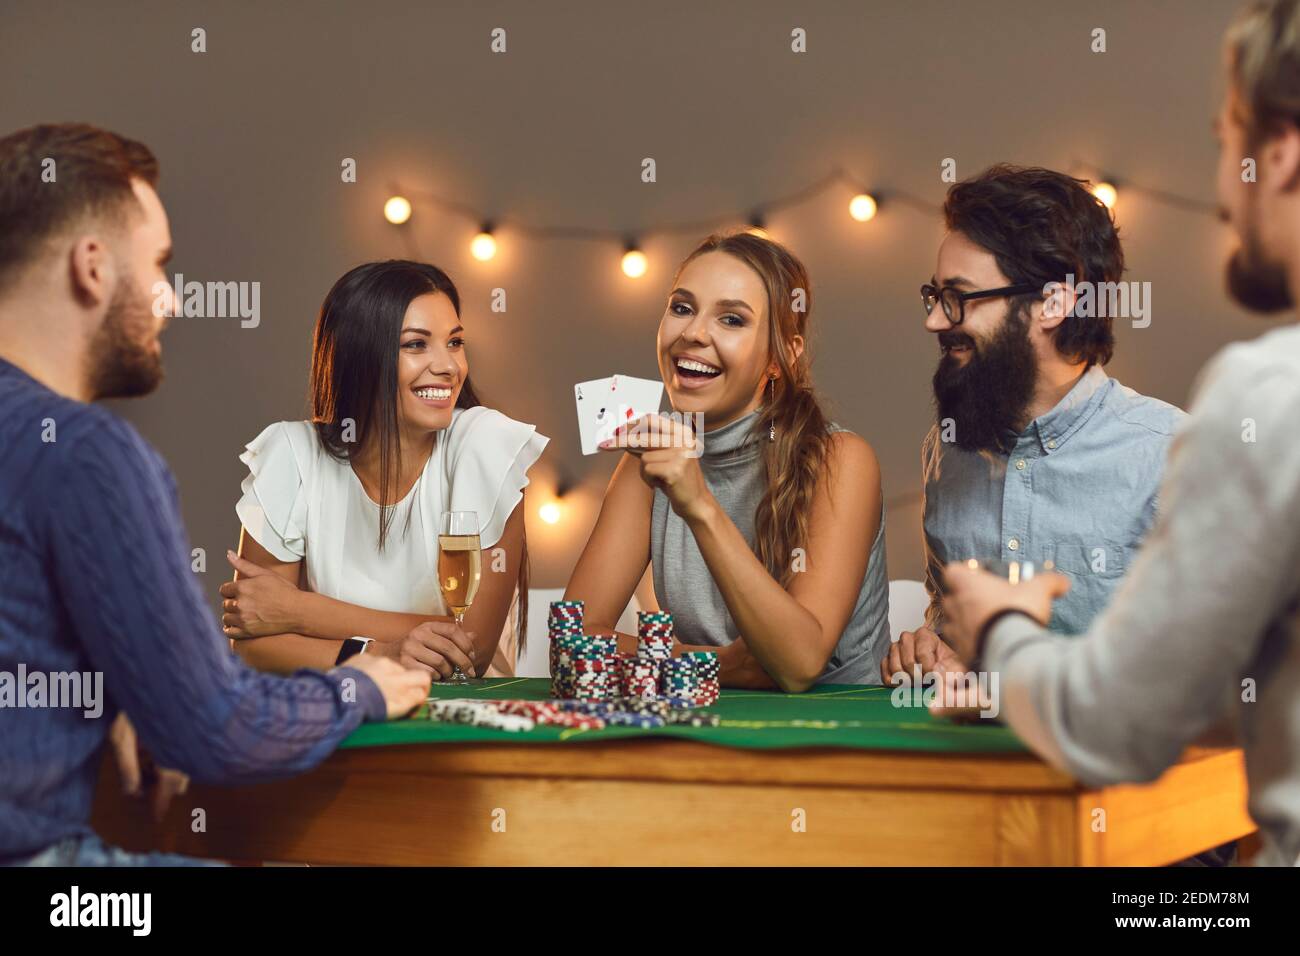 Glückliche junge Frau zeigt zwei Asse, während sie Poker mit ihren Freunden spielt. Stockfoto